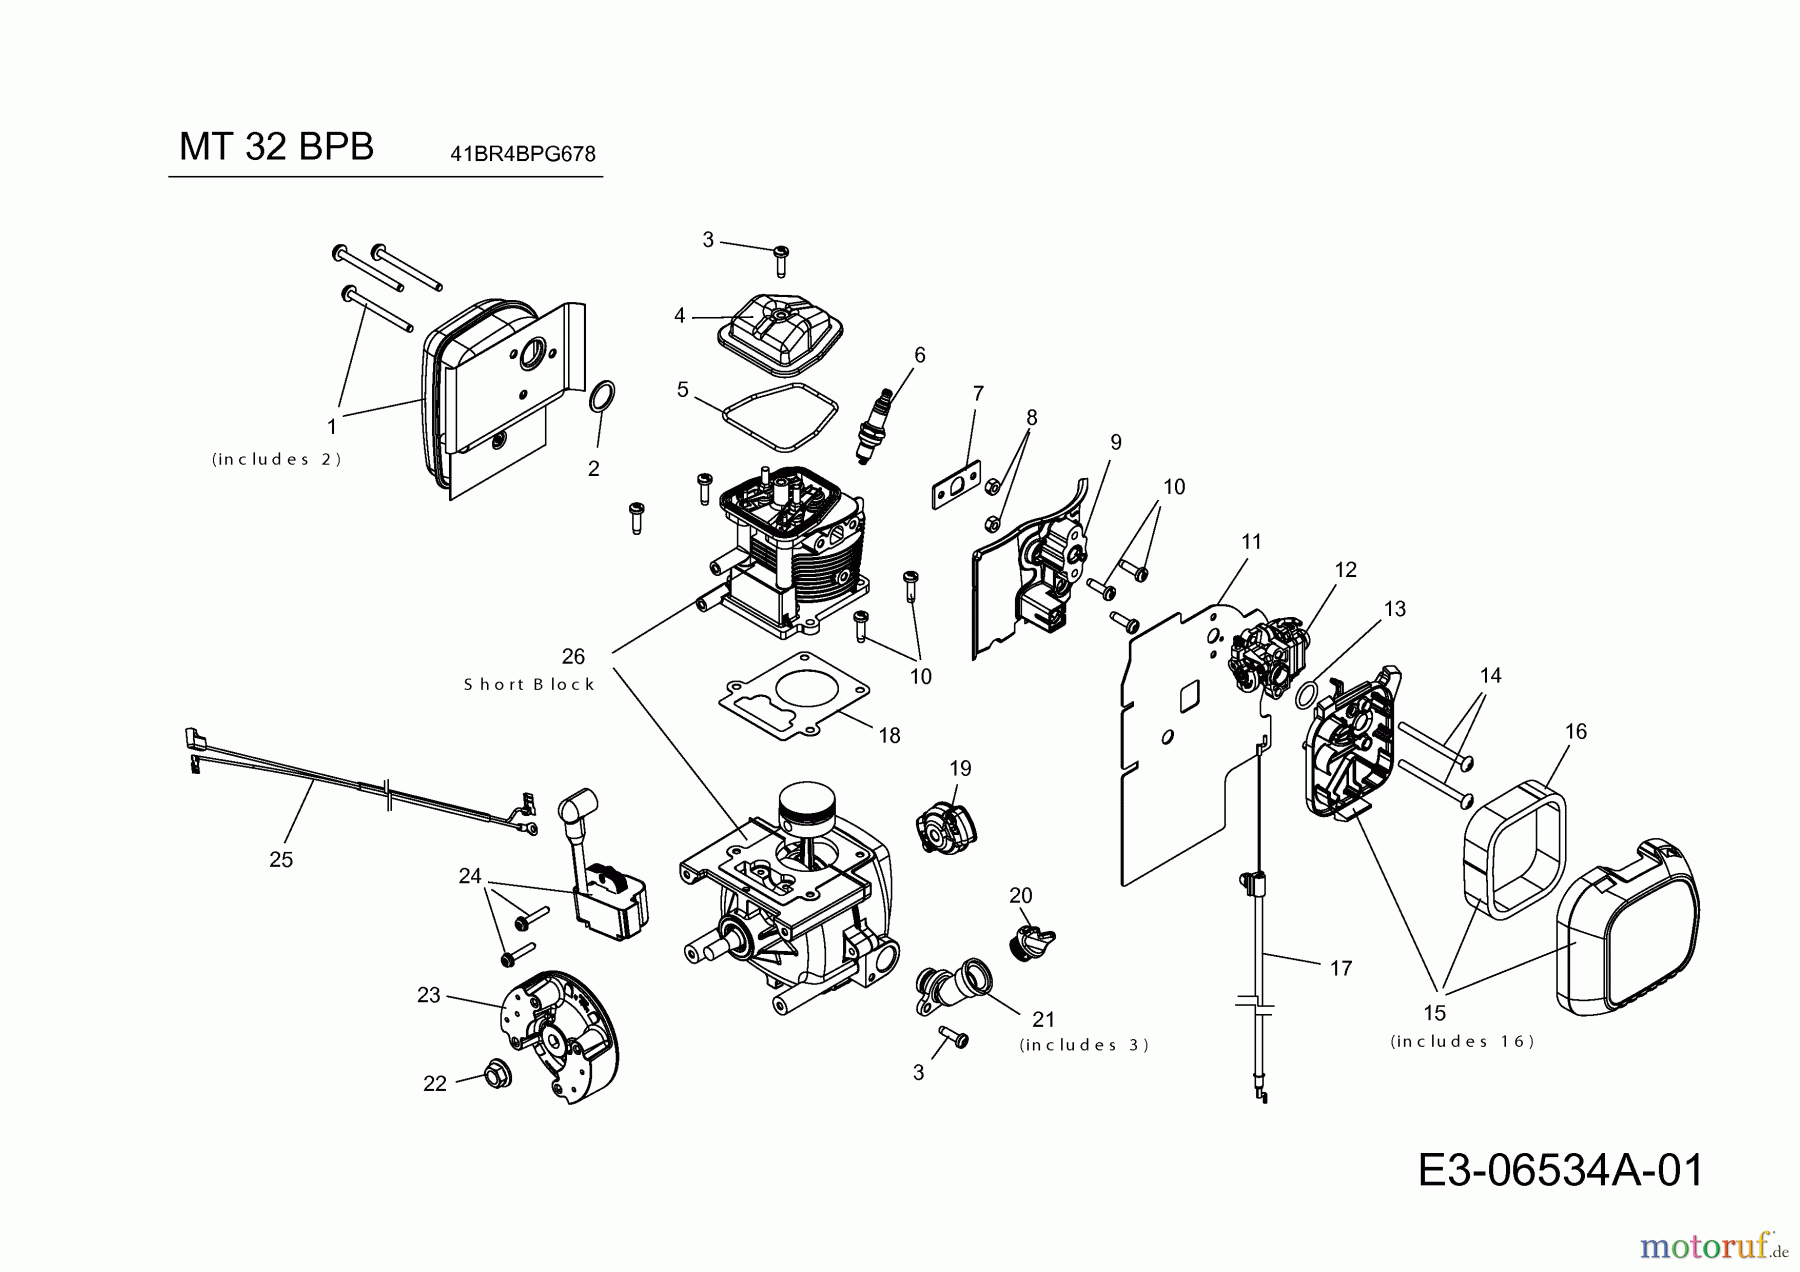  MTD Leaf blower, Blower vac MT 32 BPB 41BR4BPG678  (2018) Engine